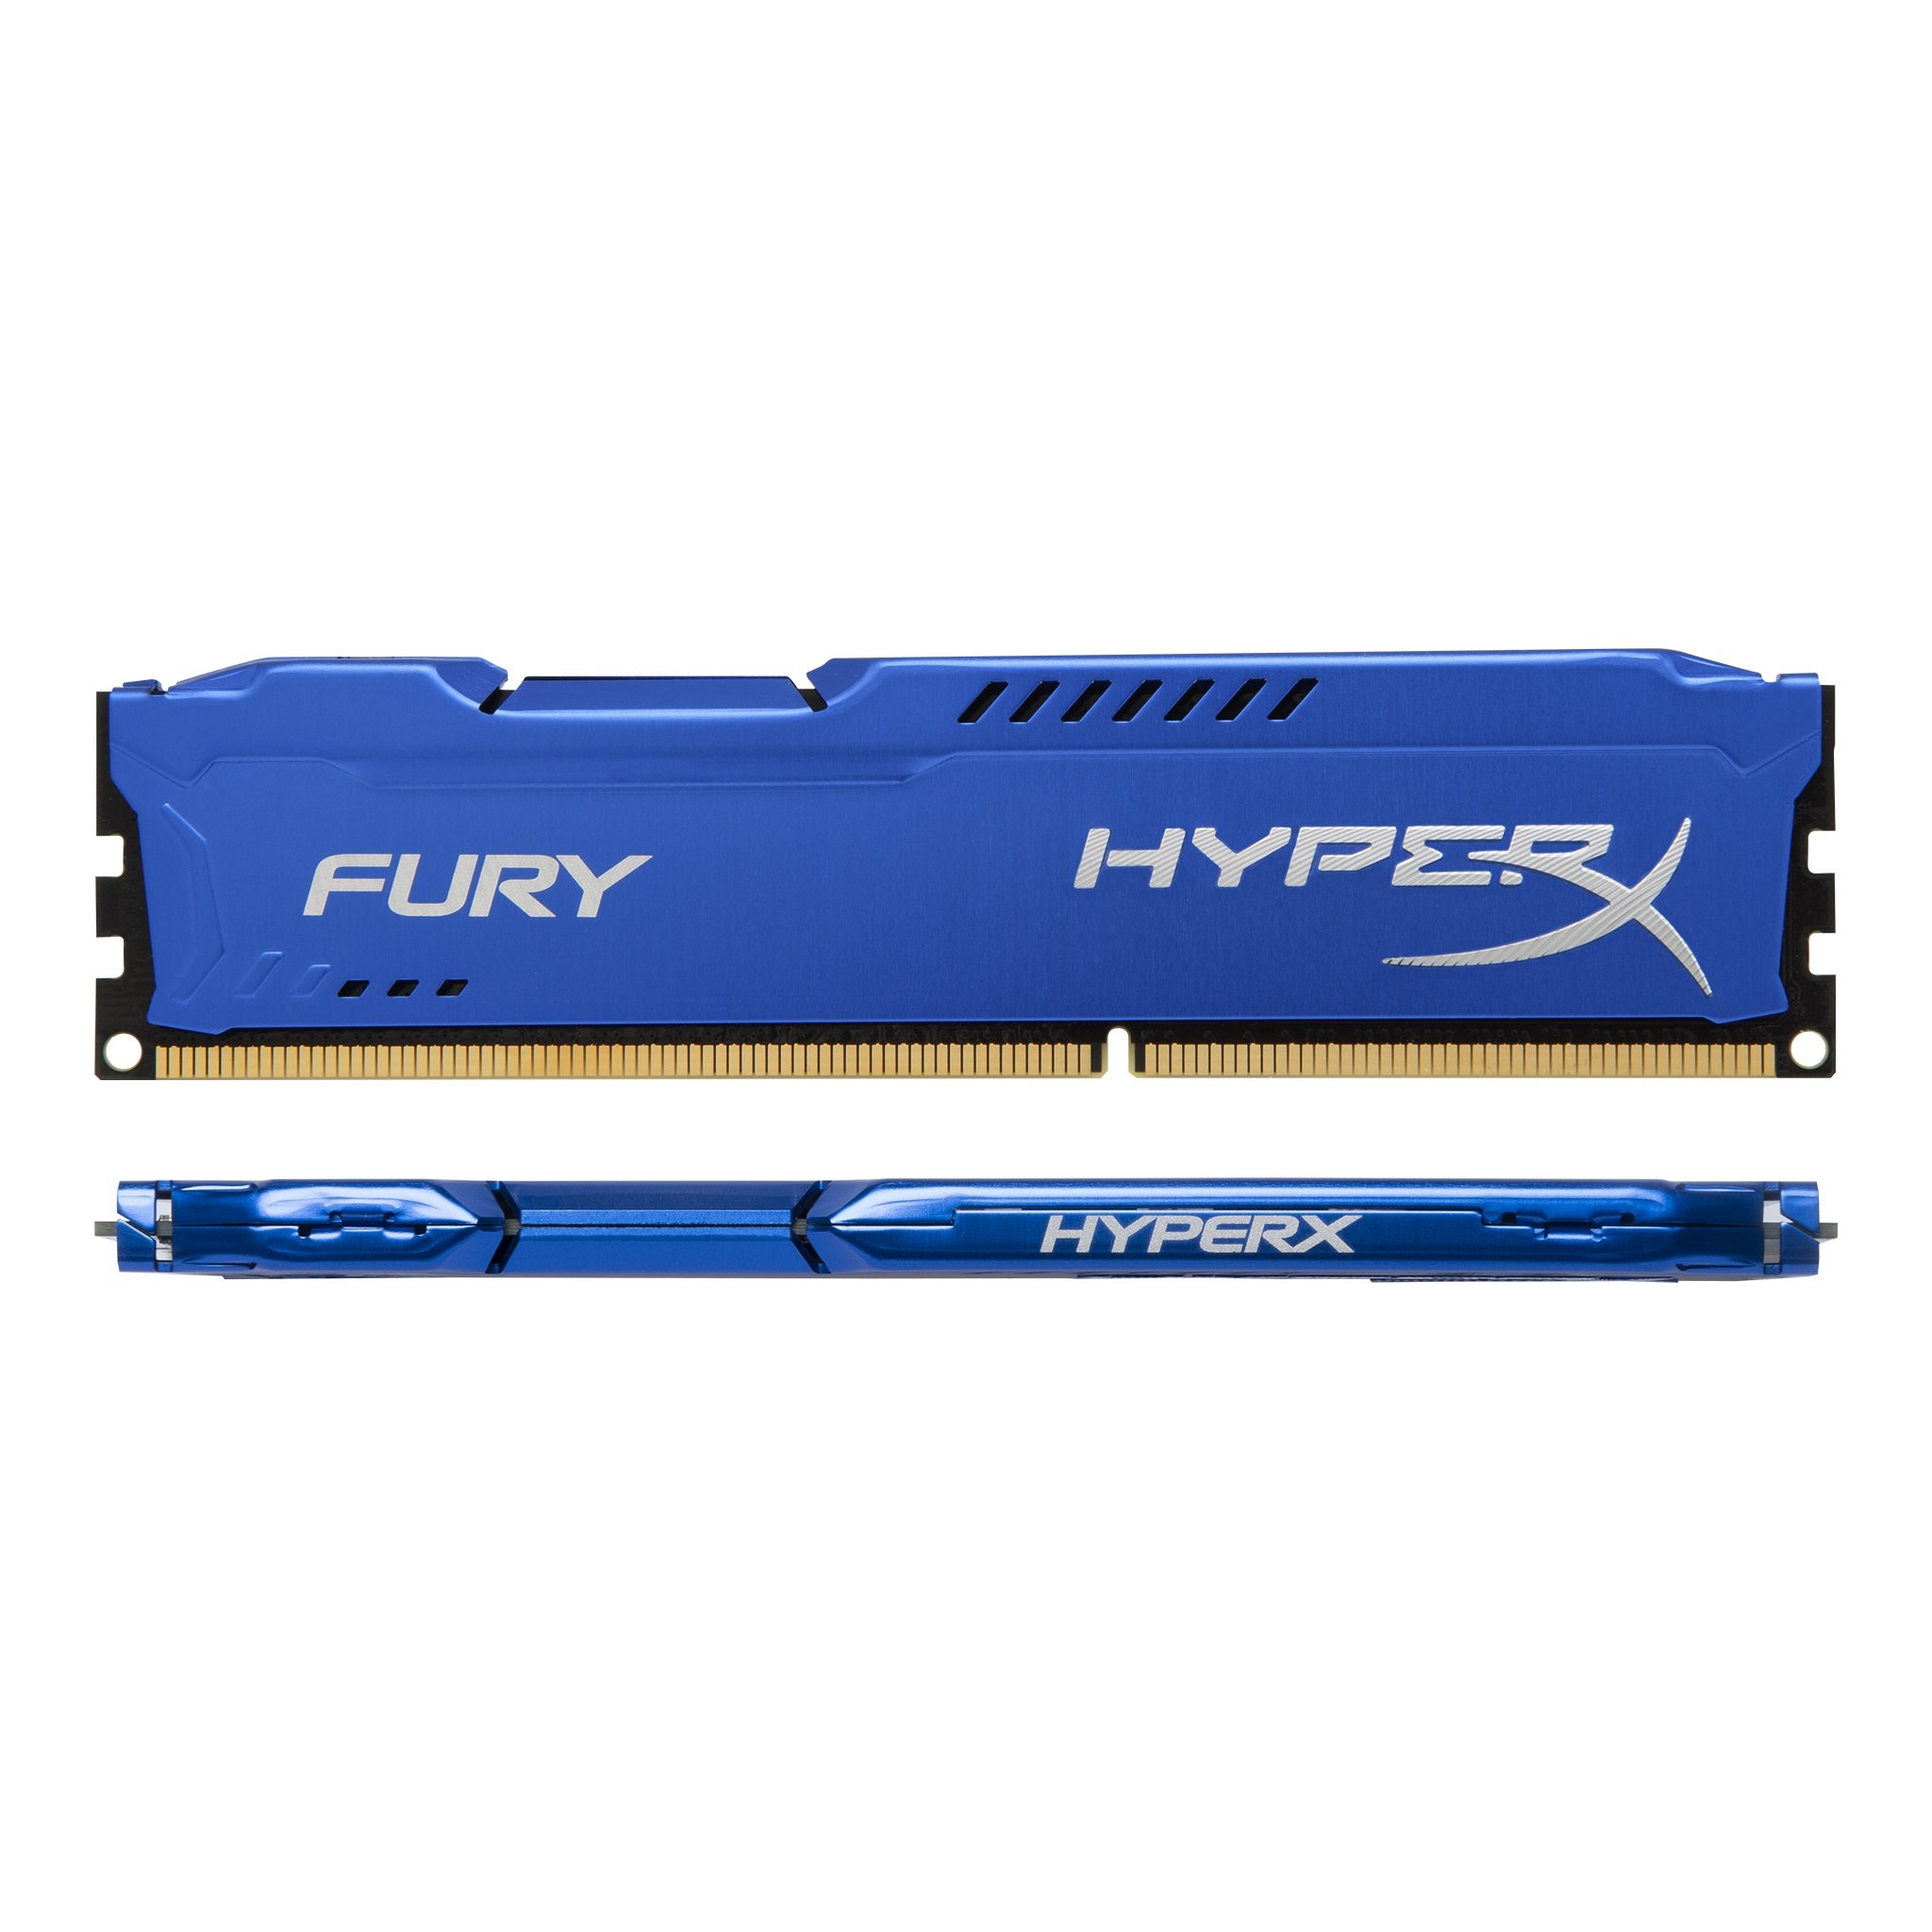 niettemin Wizard foto Kingstone HyperX Fury DDR3 1600 Blue - MegaDealMedia